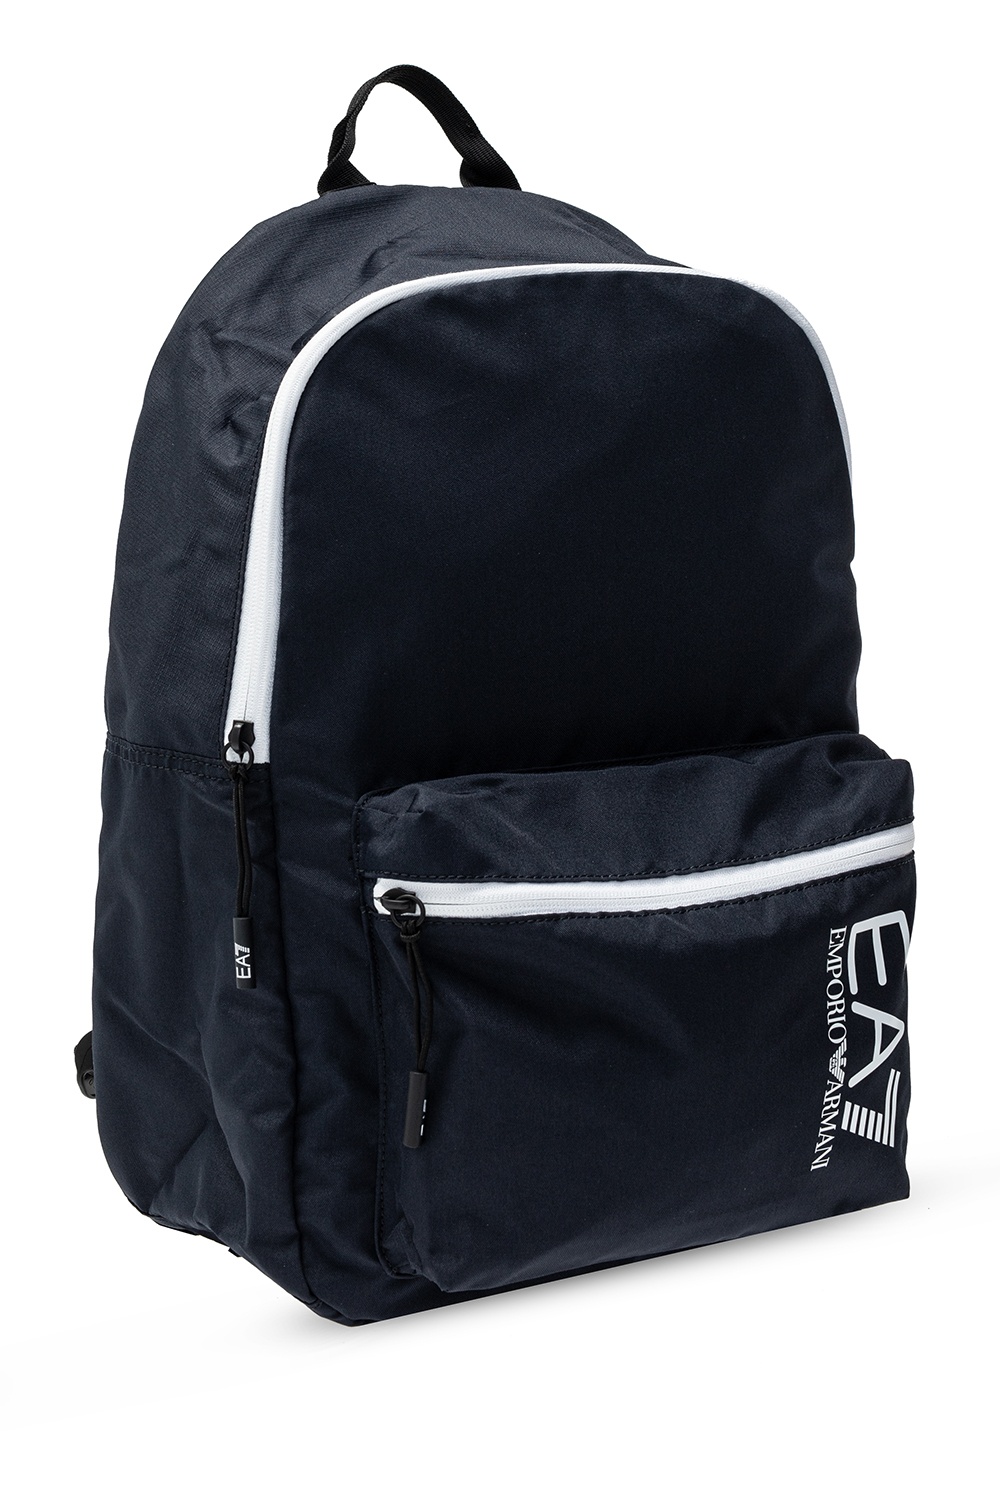 armani backpack